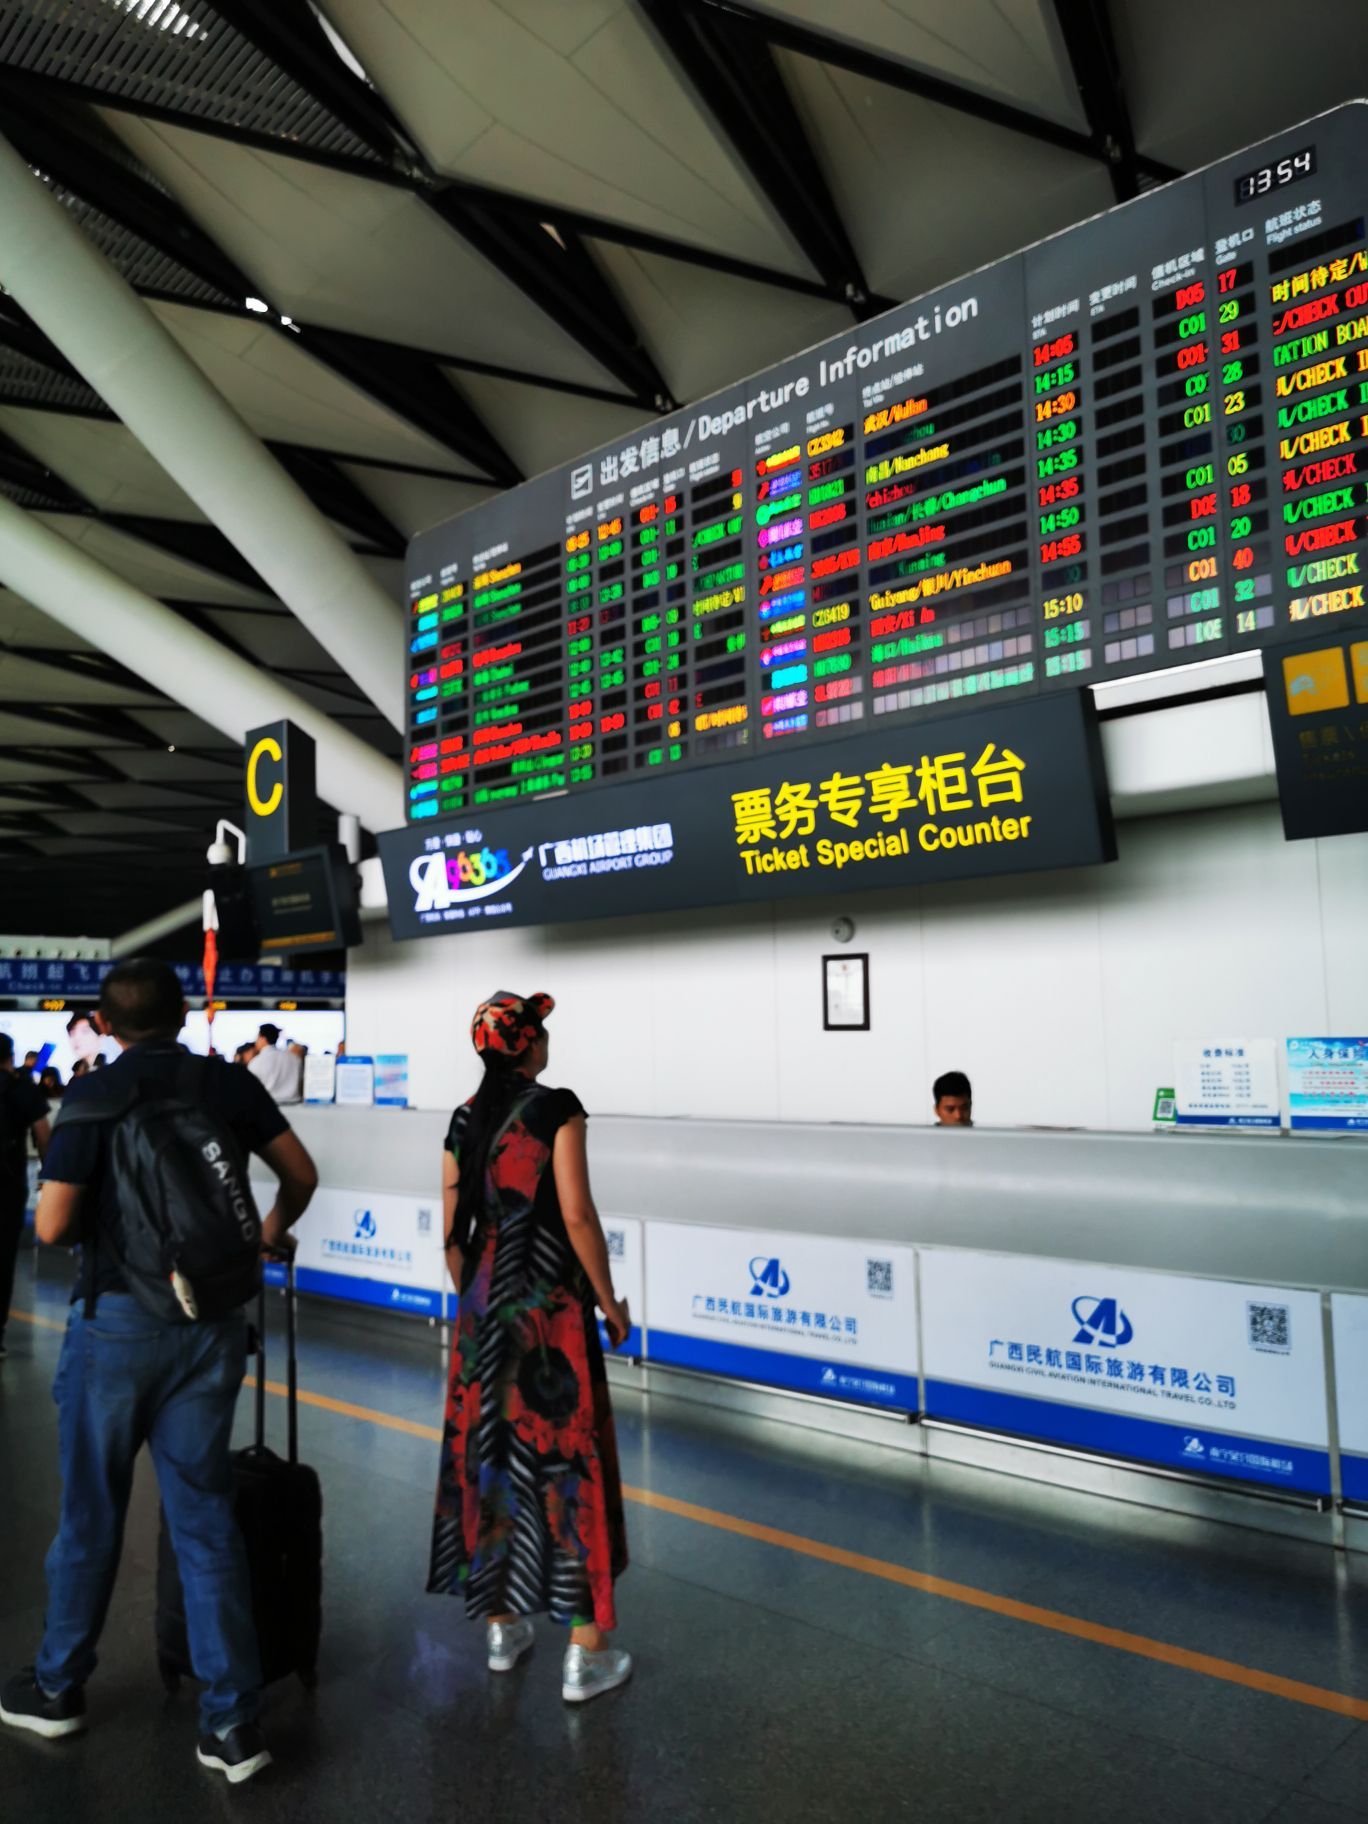 【携程攻略】吴圩国际机场怎么样/怎么去,吴圩国际机场用户点评/评价